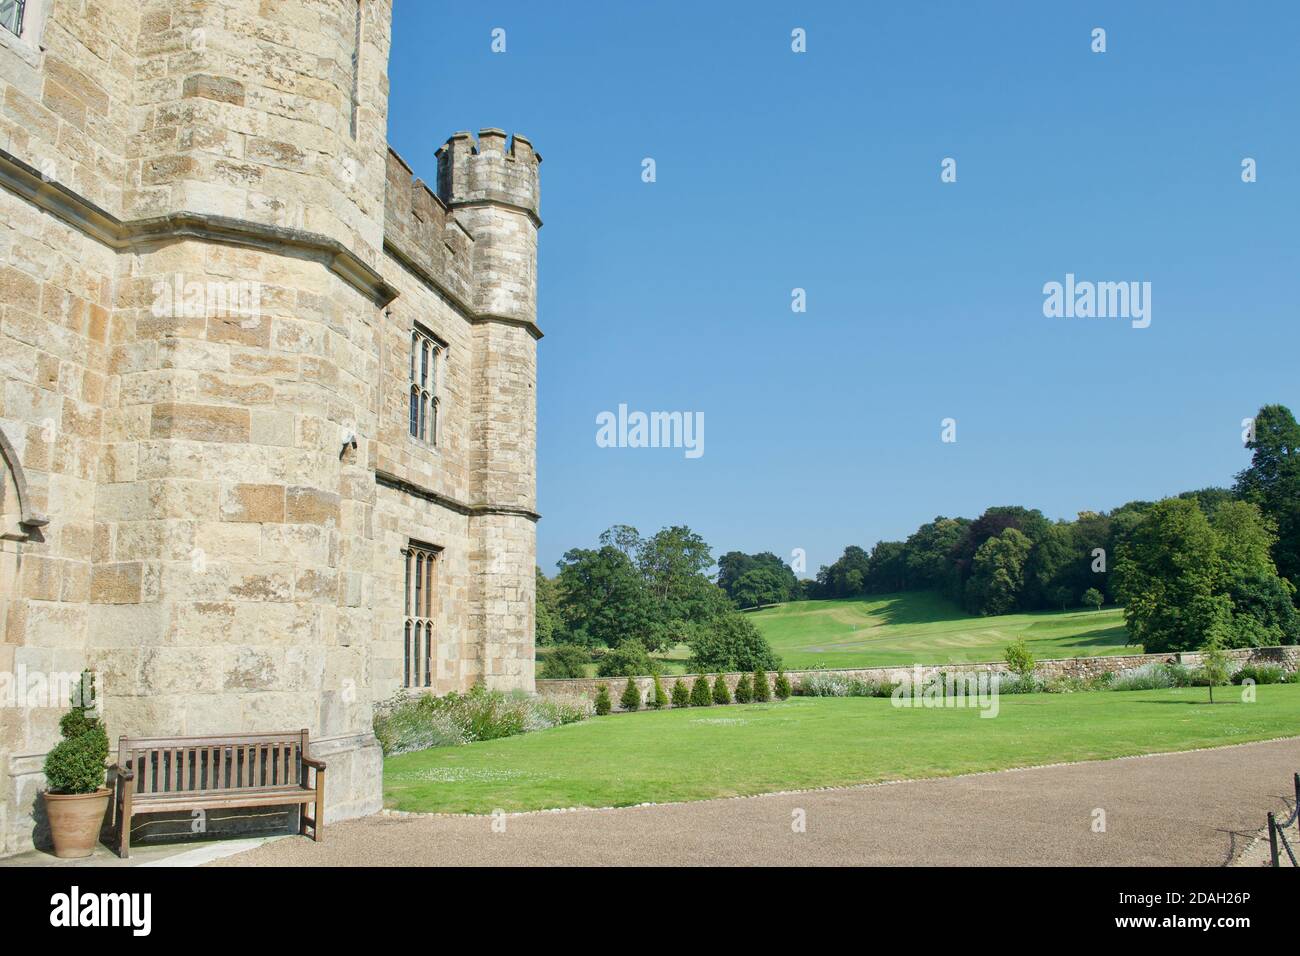 Eine alte Stein europäischen / britischen Burg an einem sonnigen Sommertag. Zinnen, Türme und Türme mit Blick auf weitläufige Rasenflächen und grünen Wald Stockfoto